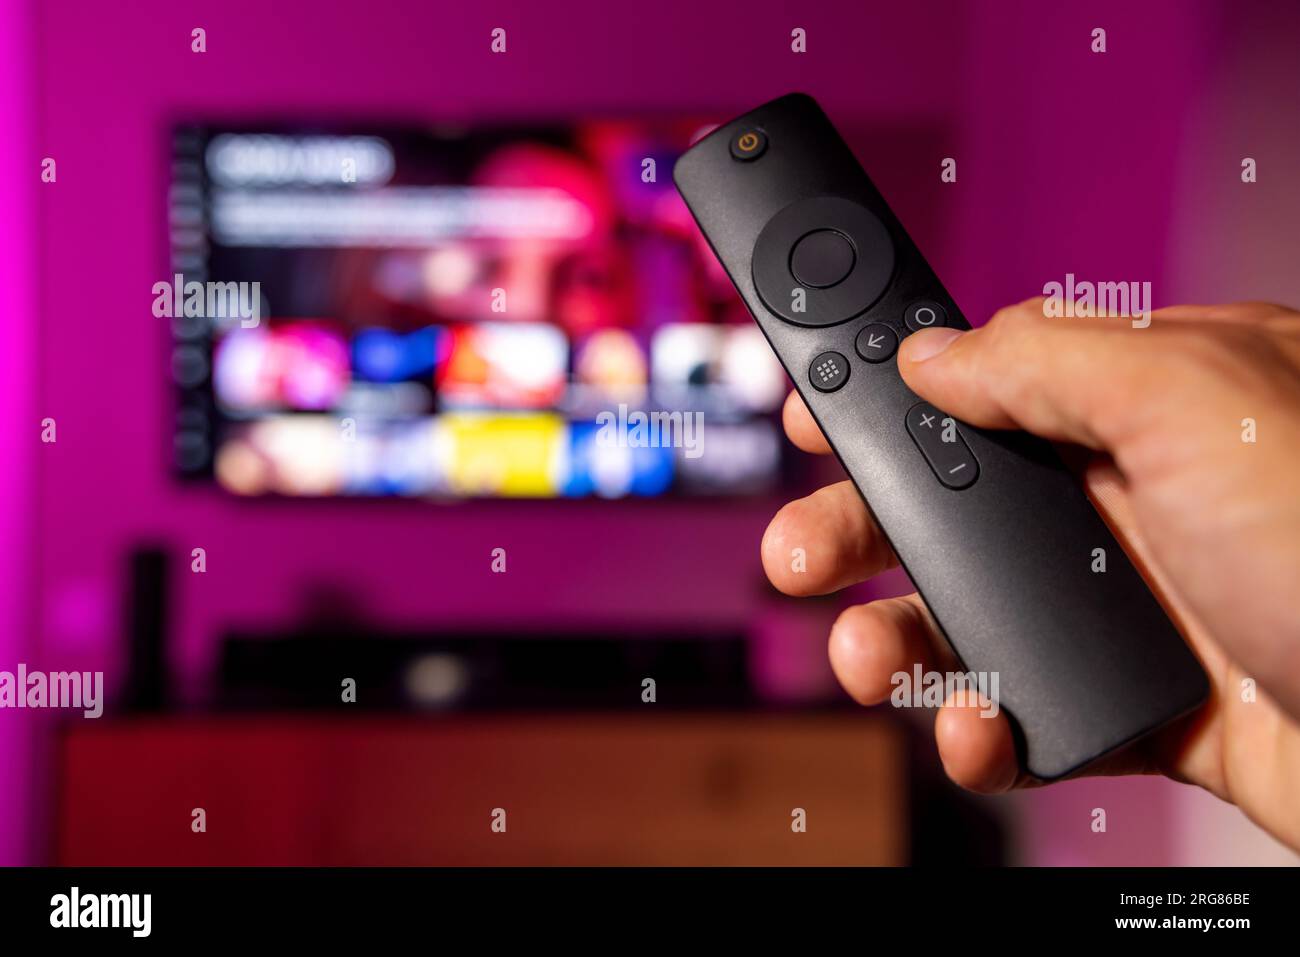 telecomando in mano con tv in background. servizio di streaming, contenuti on demand. guardare la televisione online a casa Foto Stock